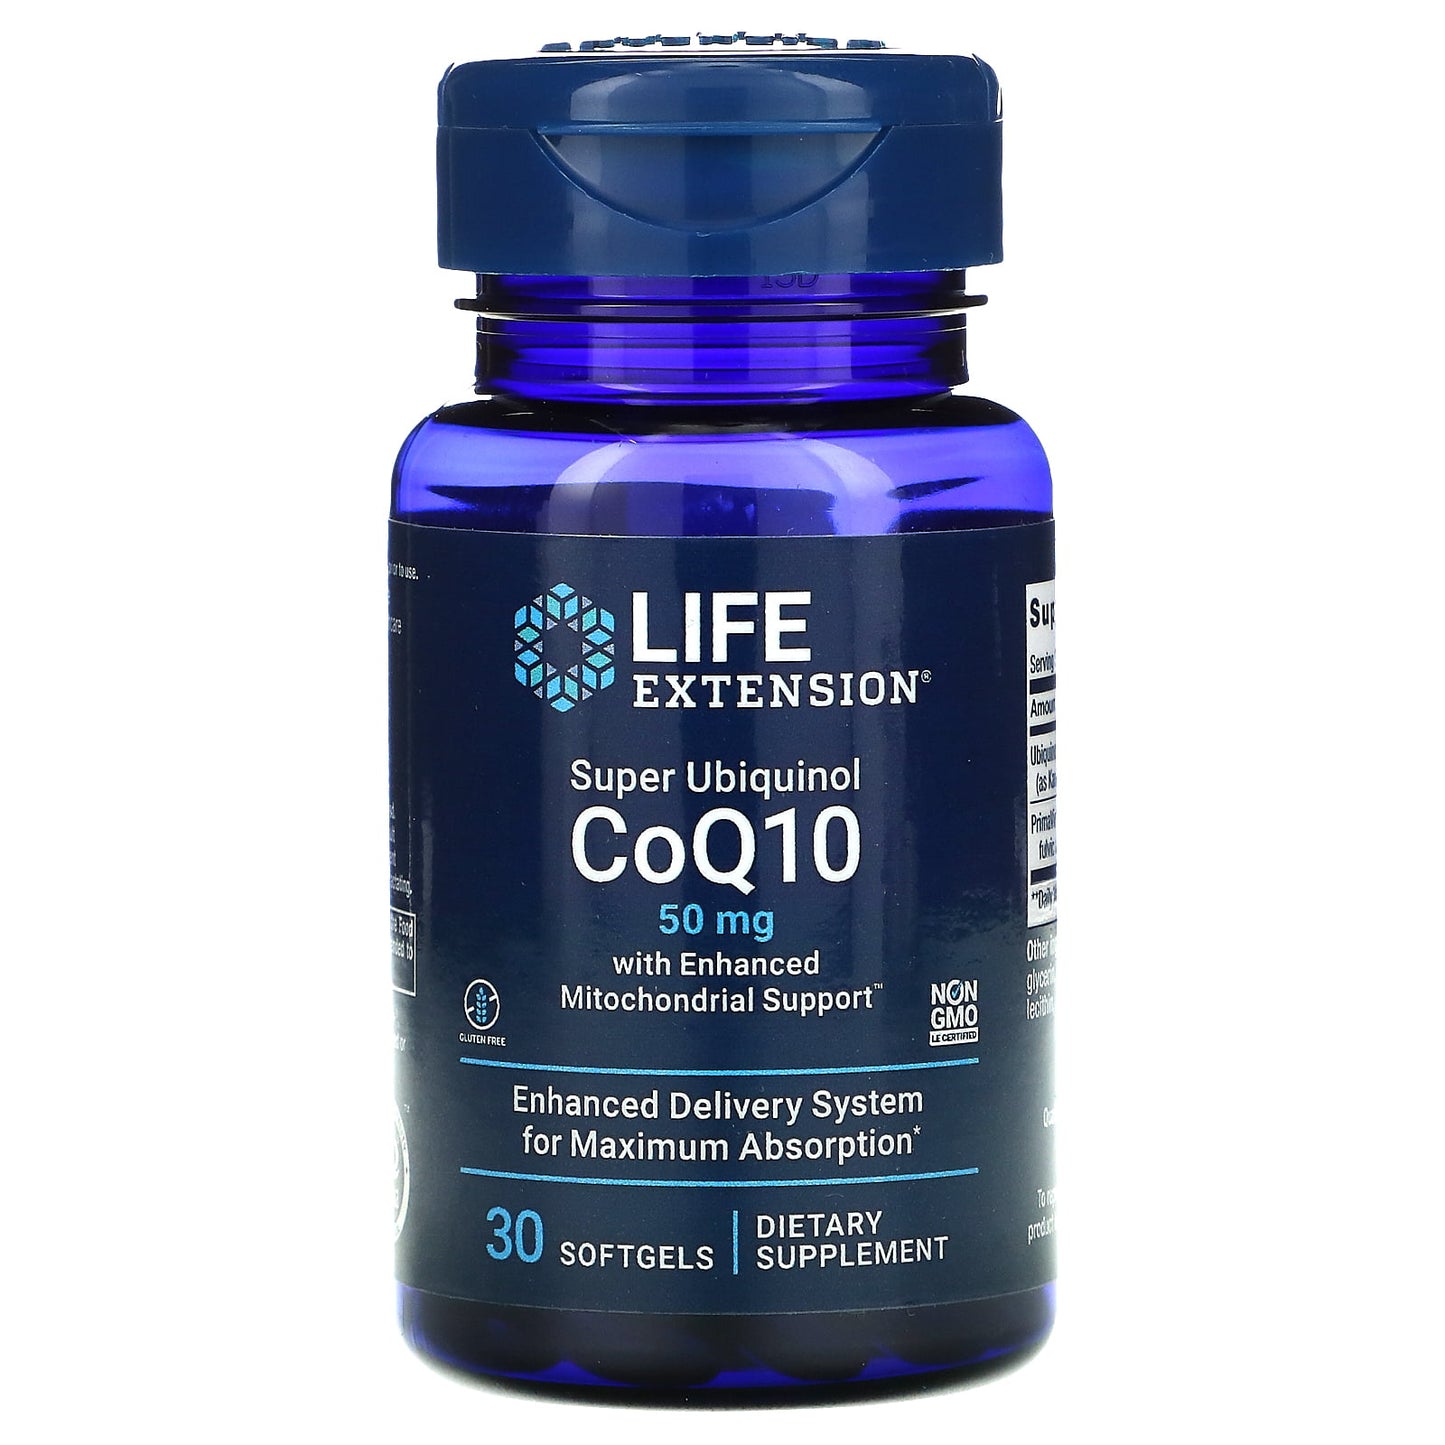 LIFE EXTENSION SUPER UBIQUINOL COQ10 50MG, 30 SOFTGELS